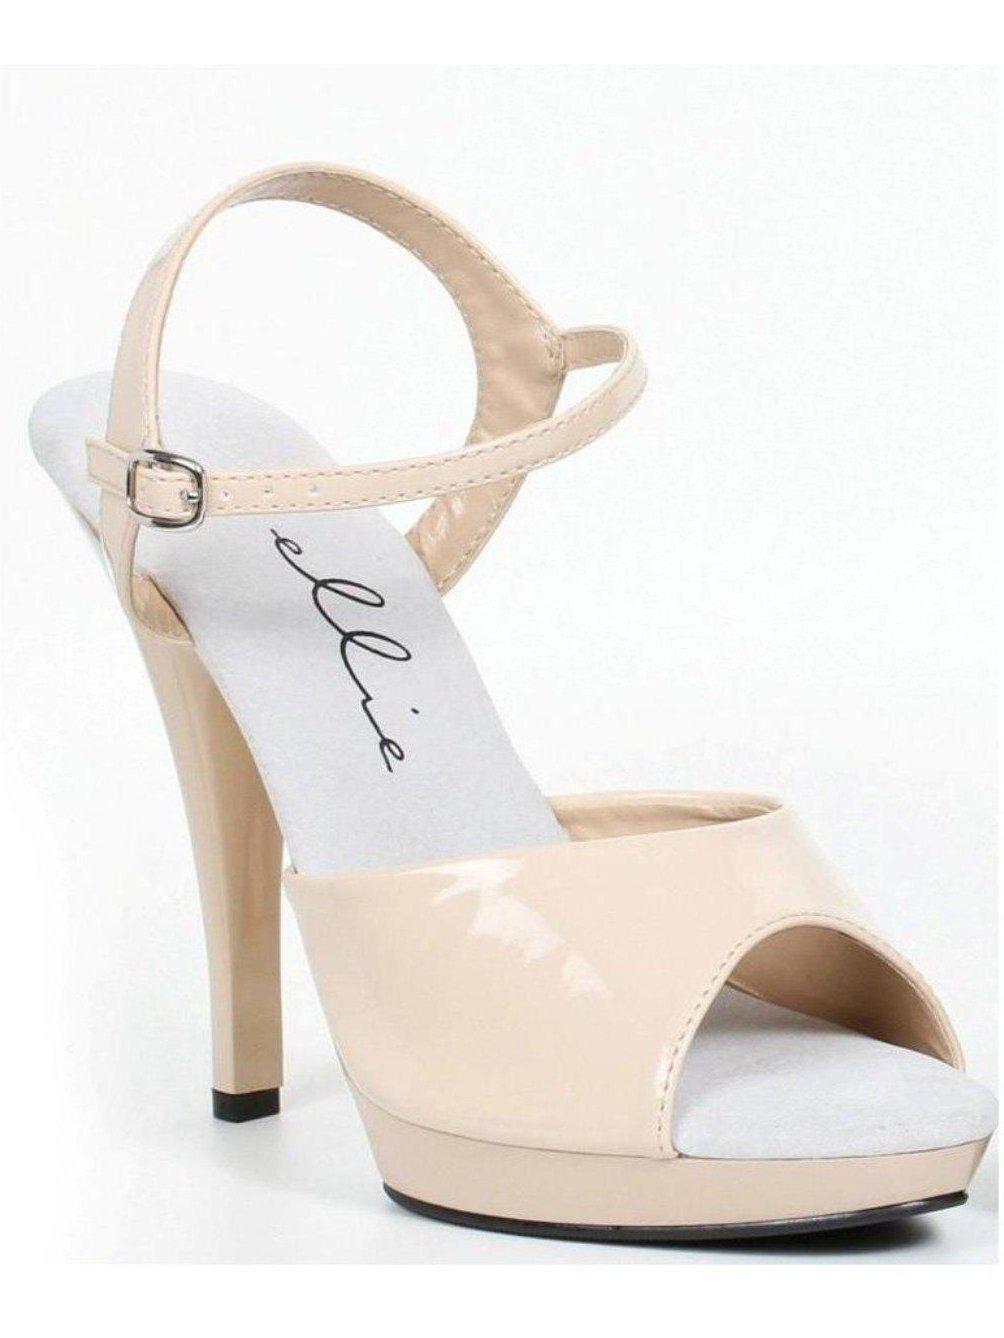 Ellie Shoes E-521-Juliet-W 5" Heel Womens WIDE Width Sandal. Nude / 12 - image 2 of 2